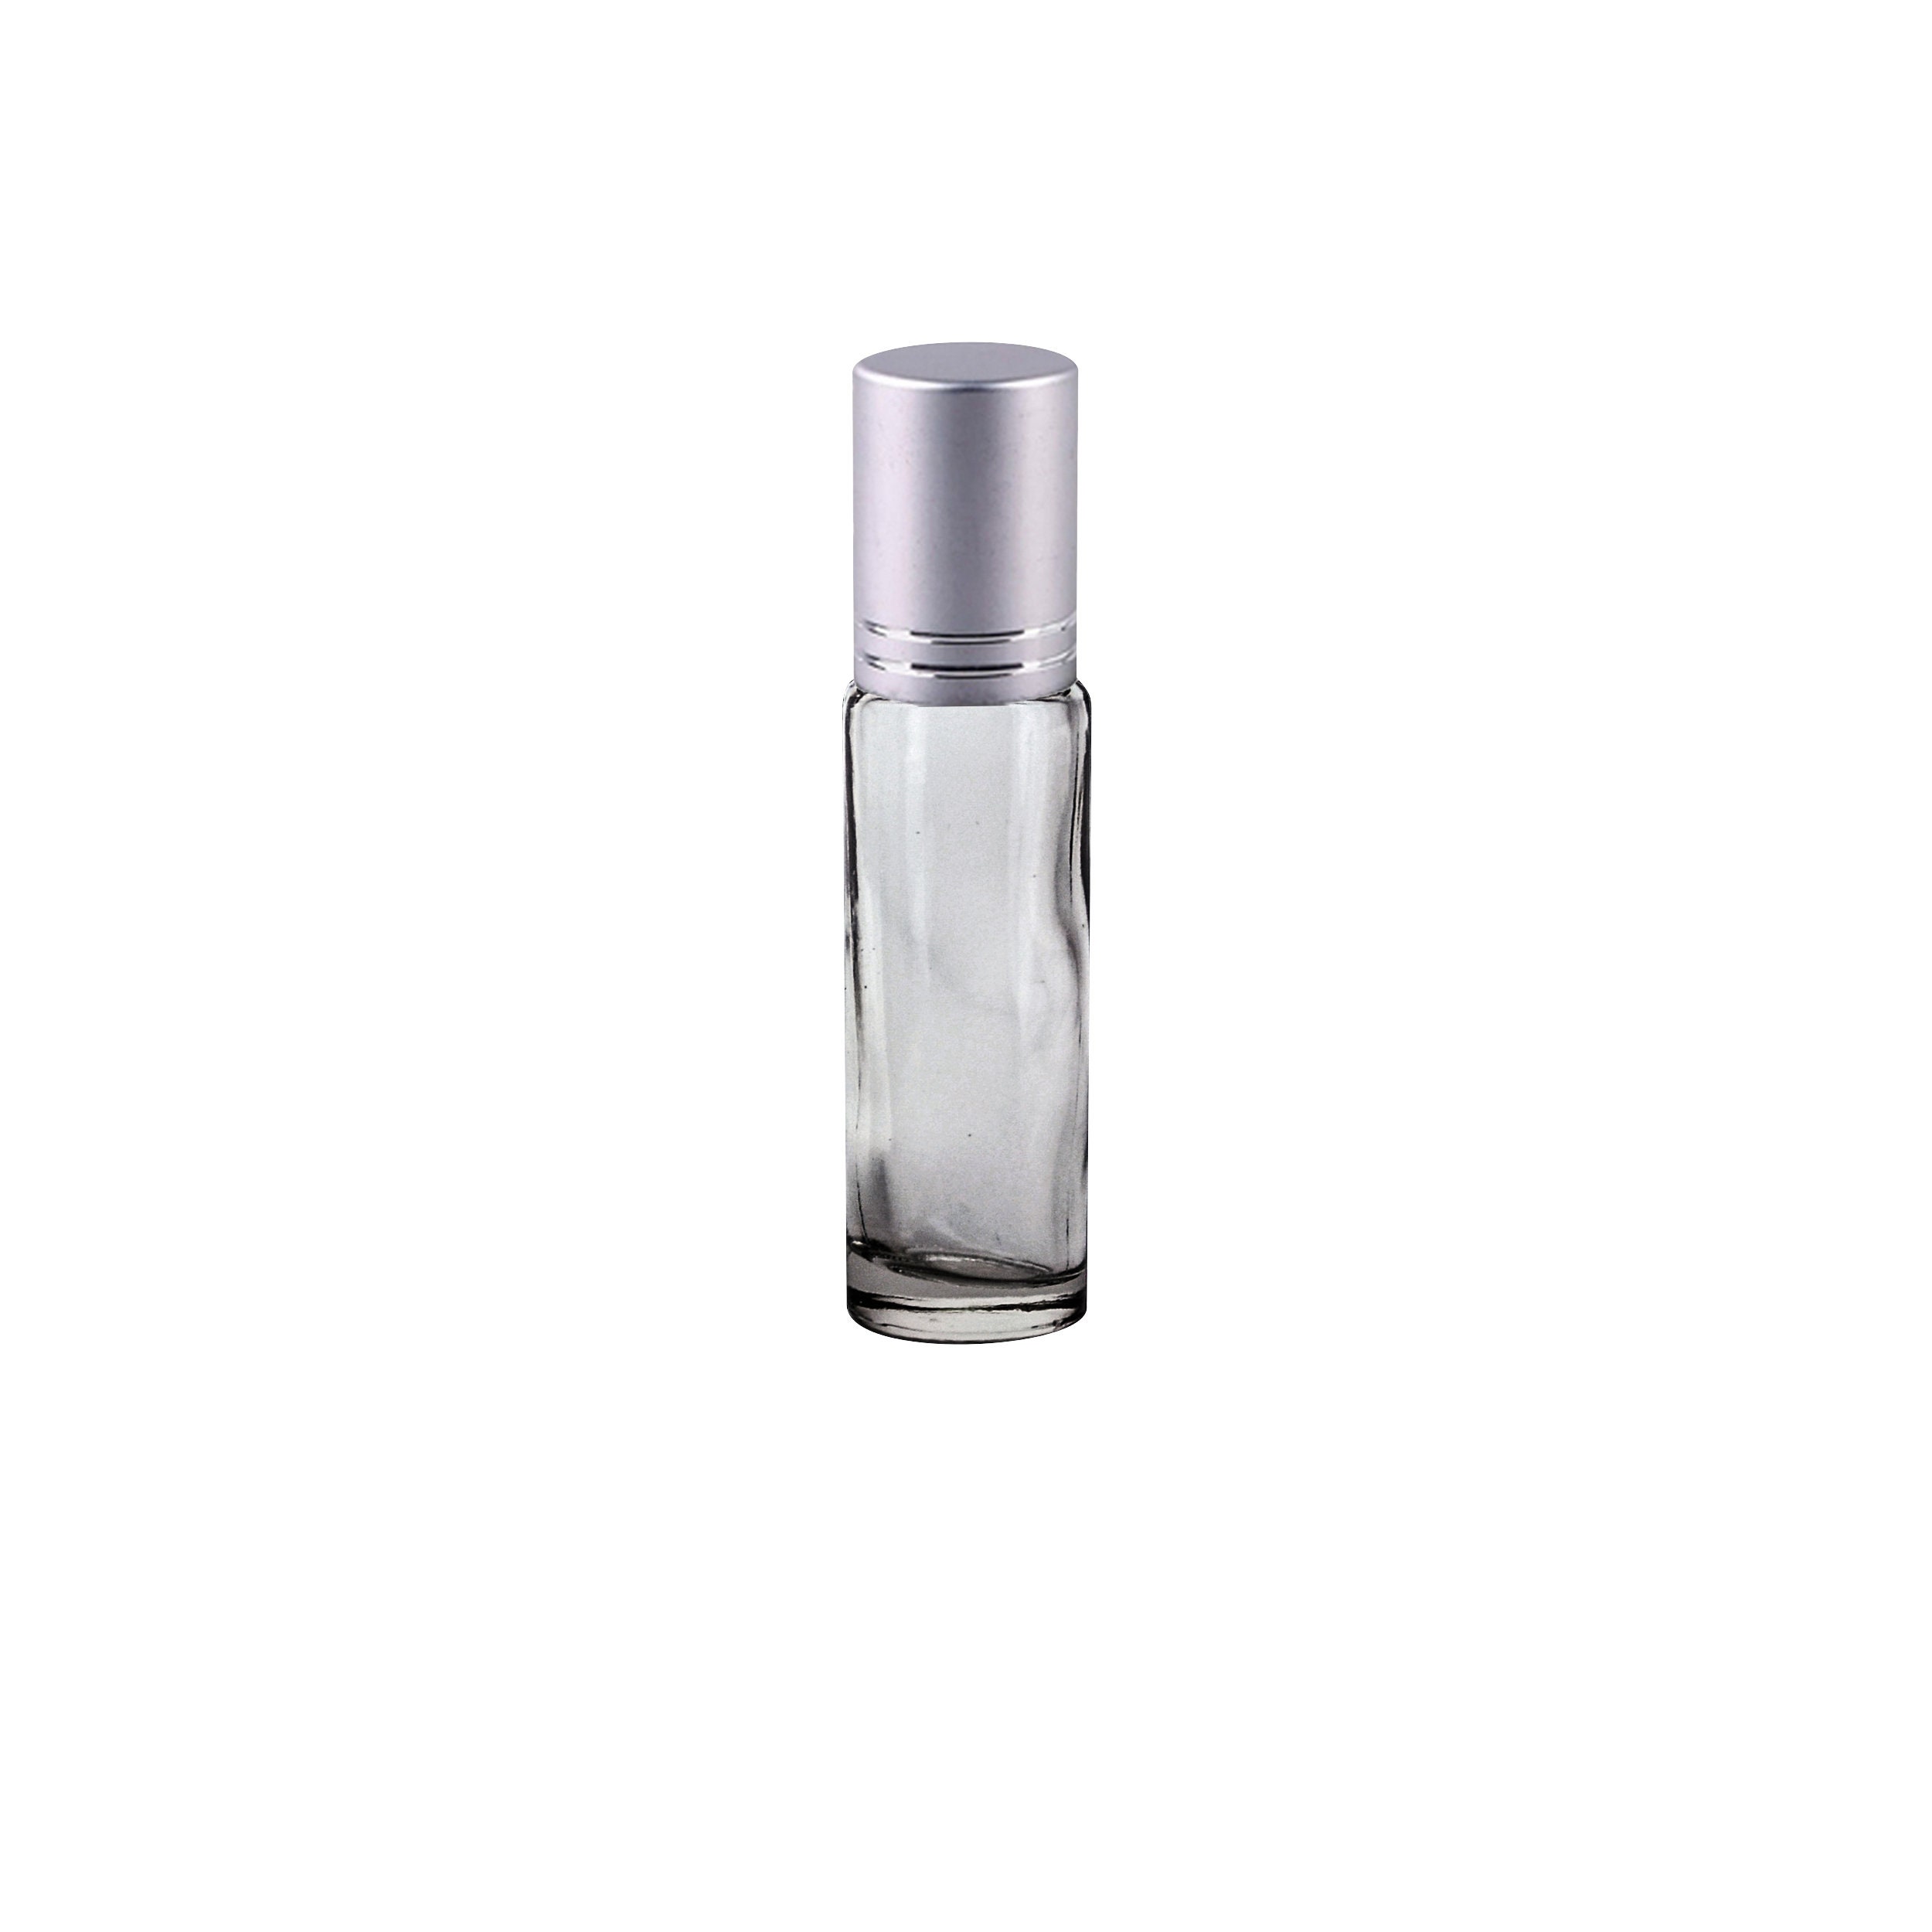 Custom Blend Perfume Oil. Similar Accords To B9 New York Musk, 10Ml Frost Glass Roller Bottle, Silver Cap